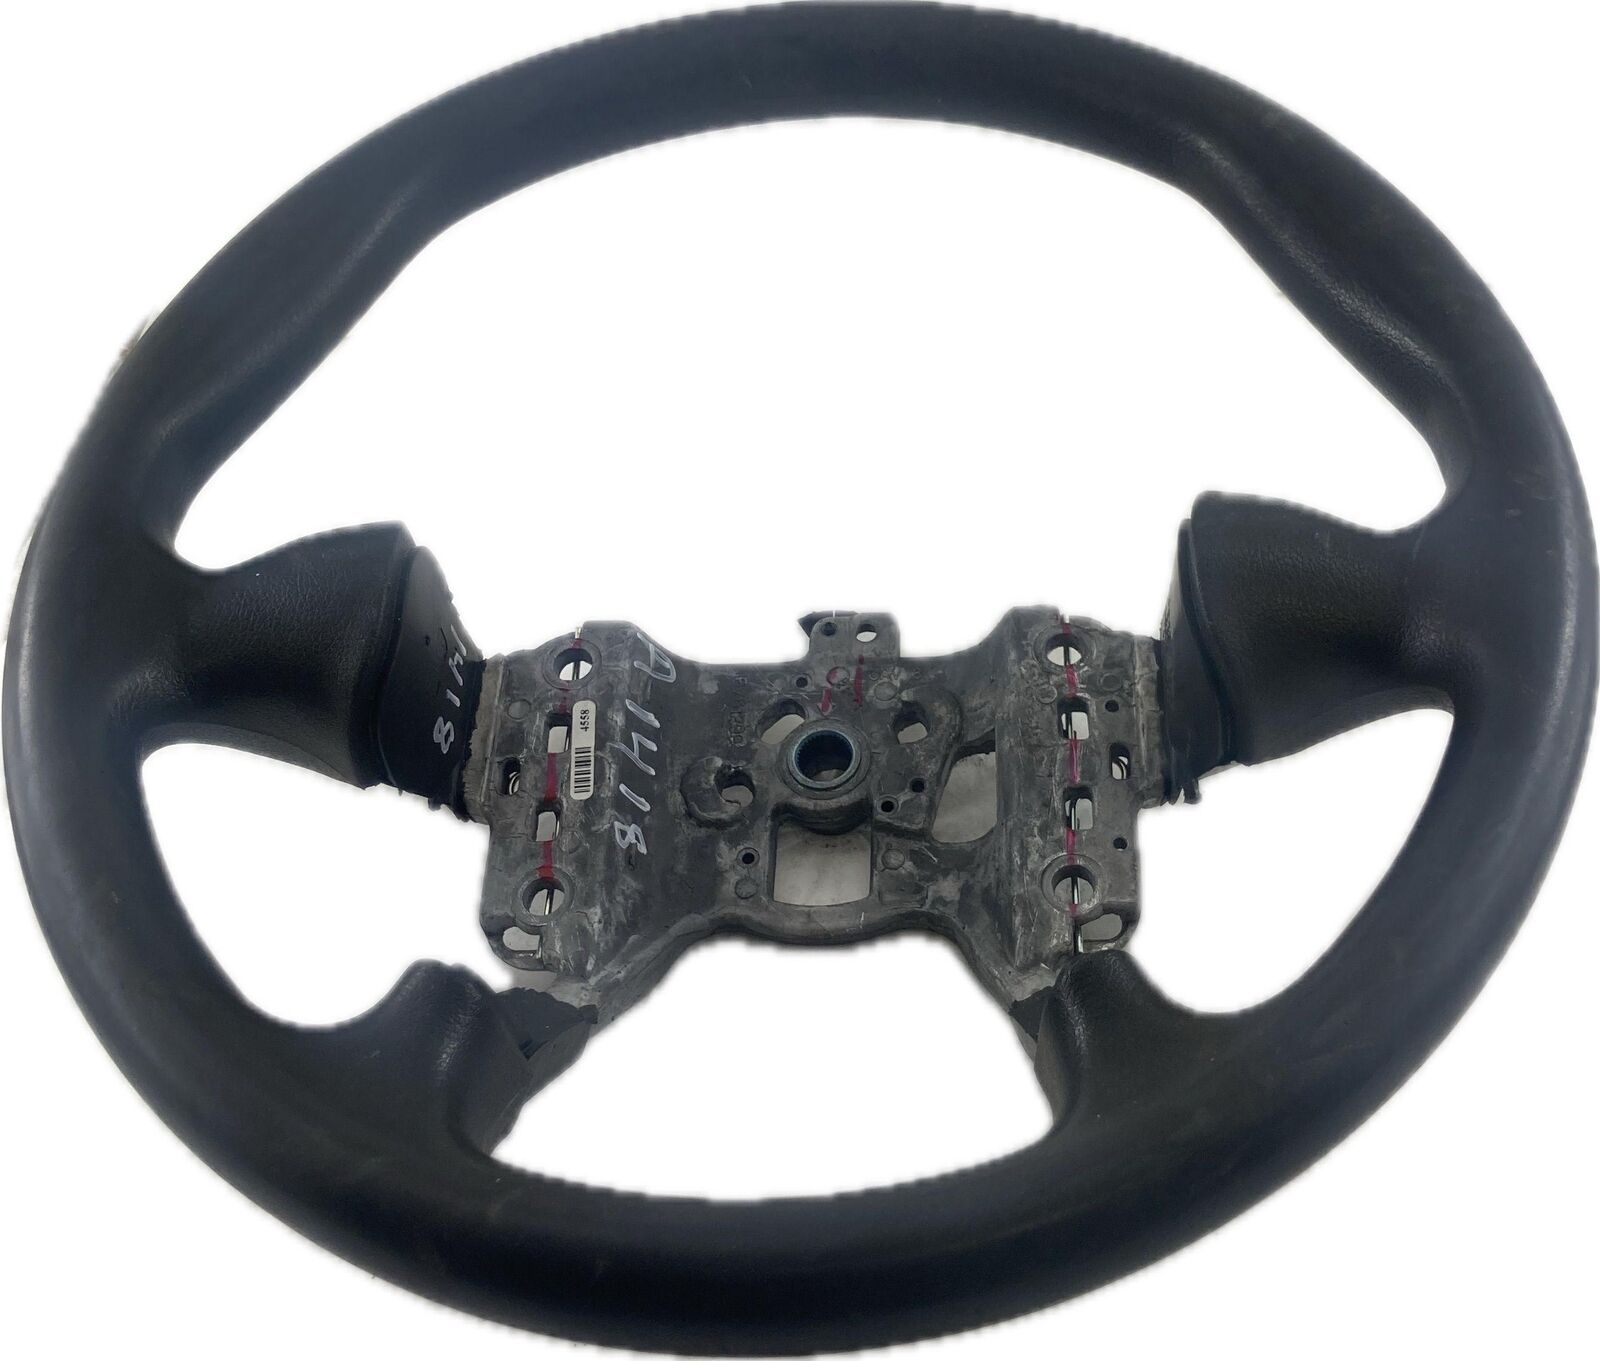 Steering Wheel PONTIAC MONTANA VAN 02 03 04 05